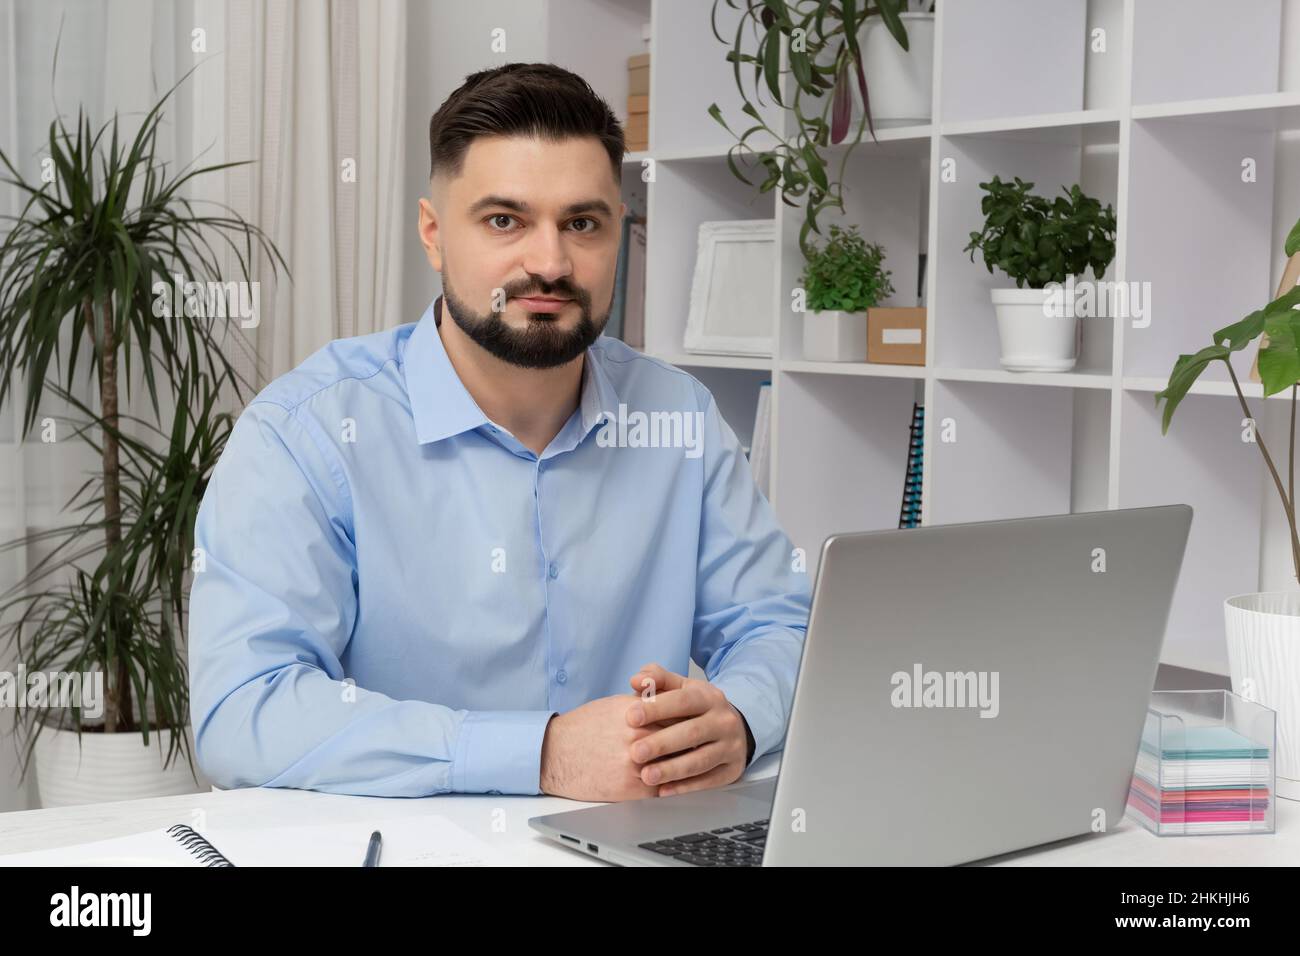 Ritratto di un uomo d'affari seduto sul posto di lavoro con un laptop. Foto Stock